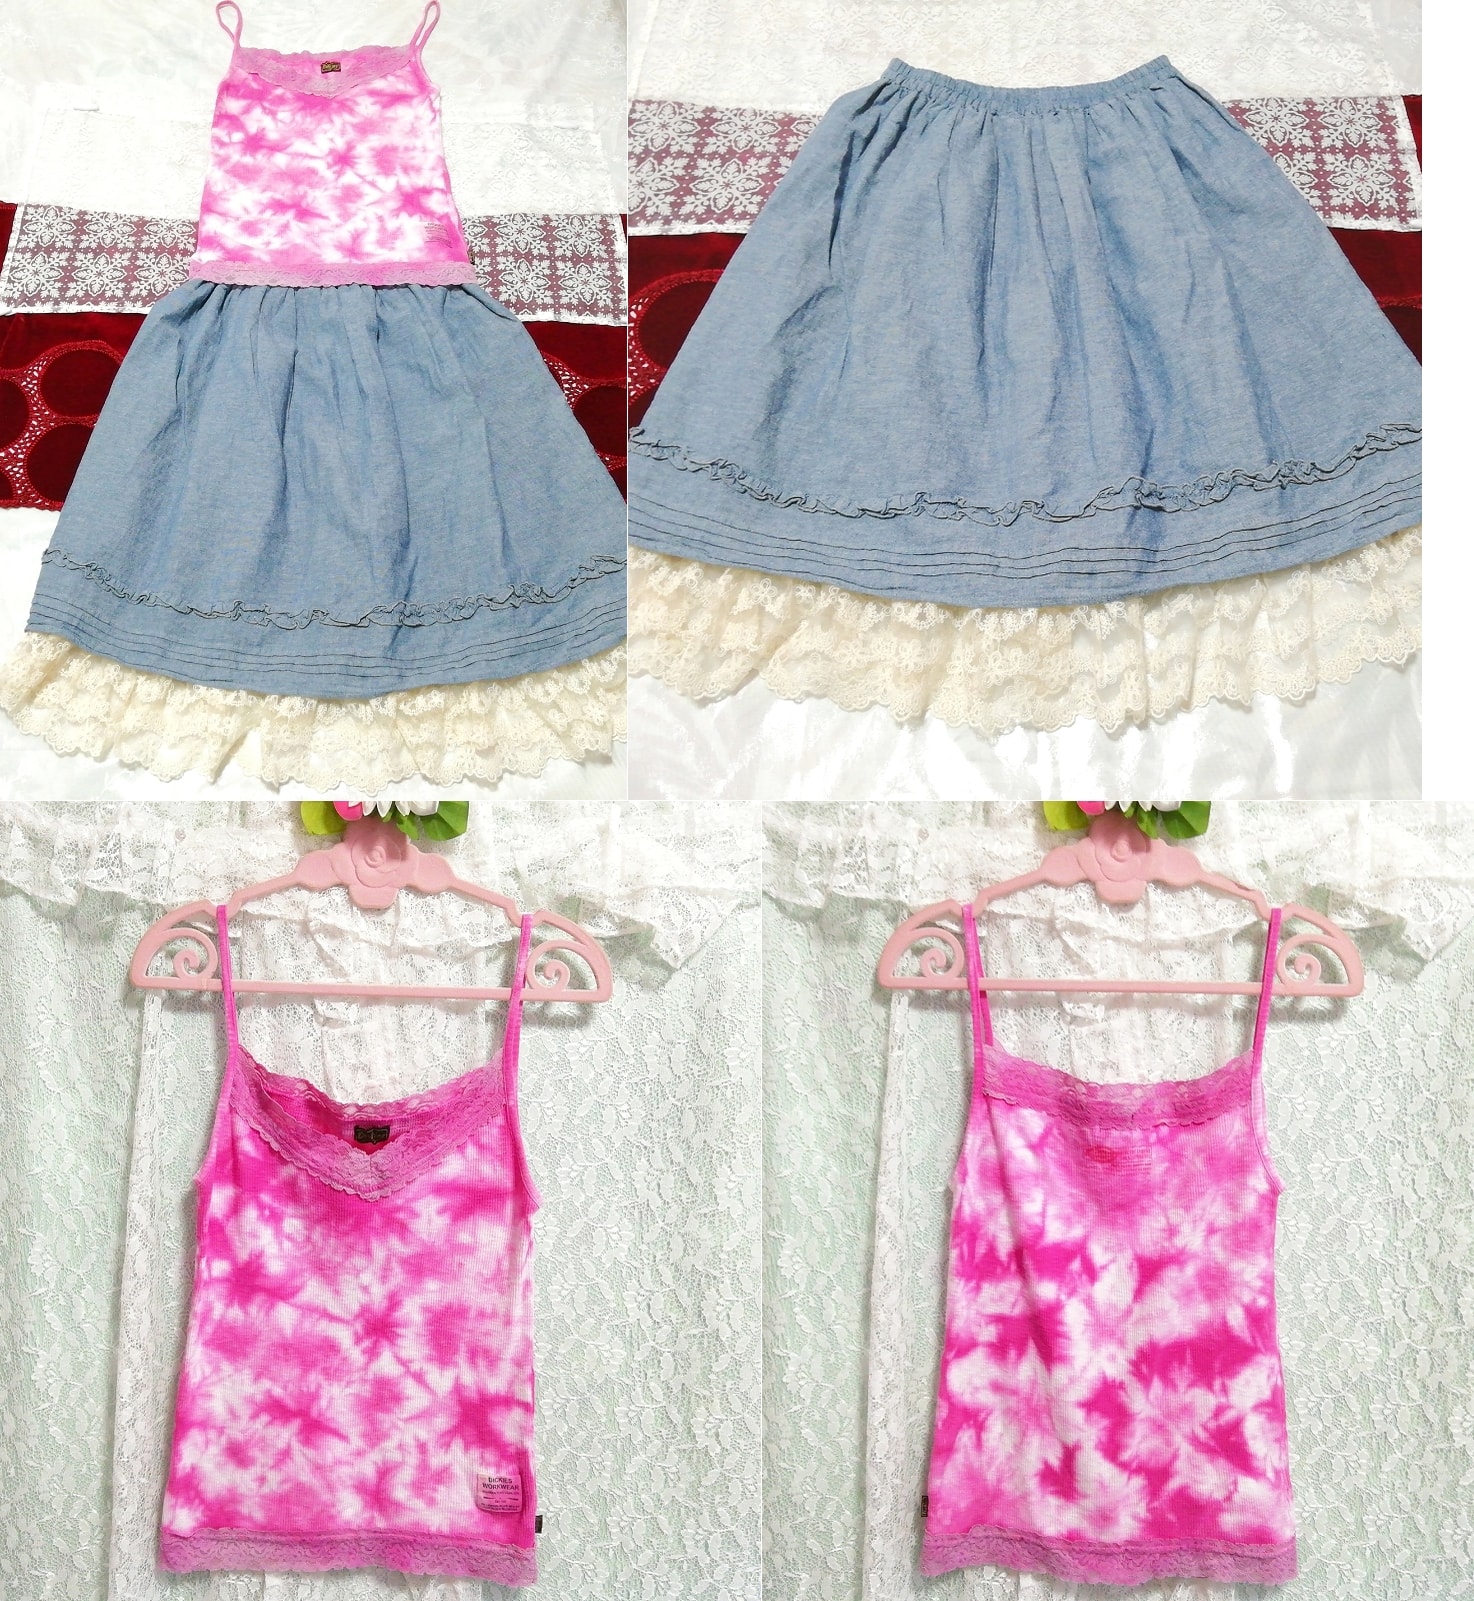 粉色蕾丝棉质吊带睡衣牛仔白色蕾丝裙 2 件, 时尚, 女士时装, 睡衣